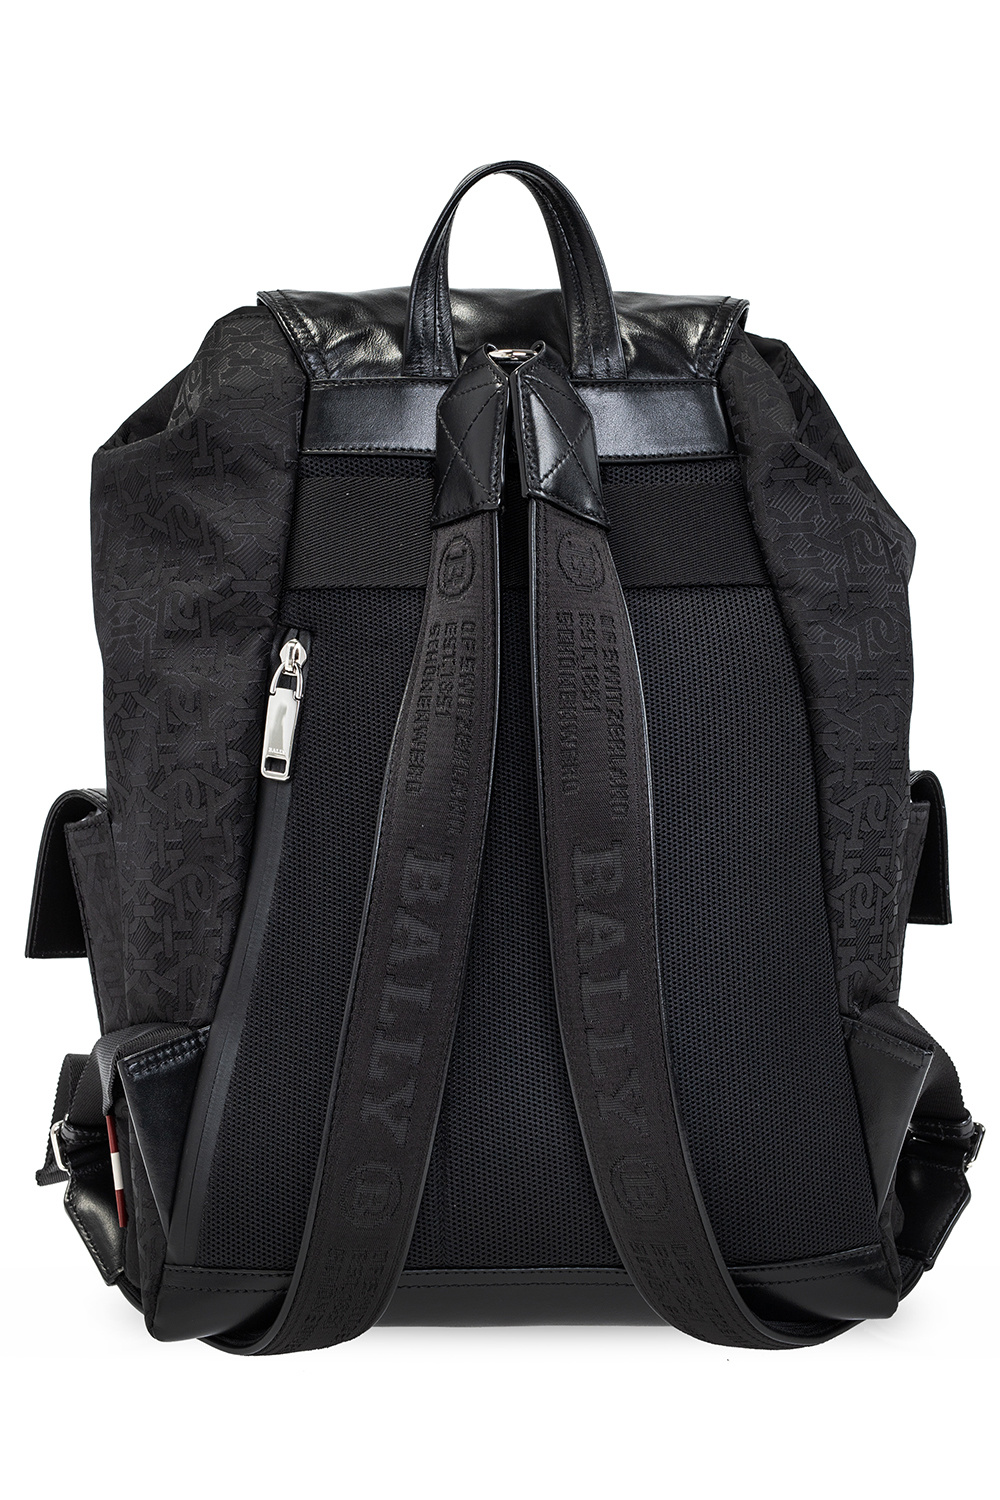 Bally ‘Abner’ backpack | Men's Bags | Vitkac